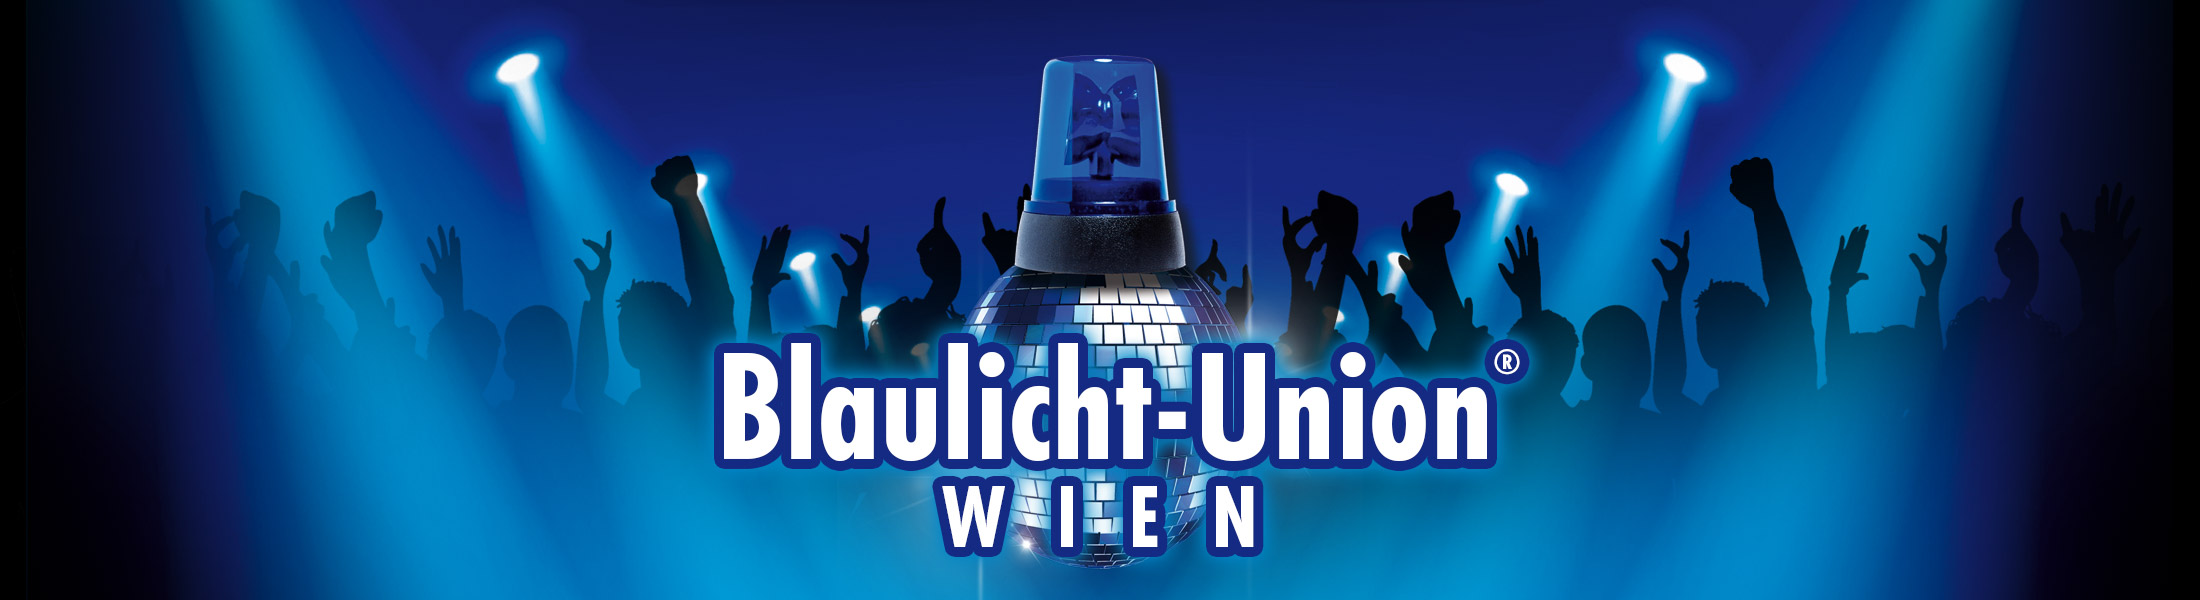 Blaulicht Union Party® Wien